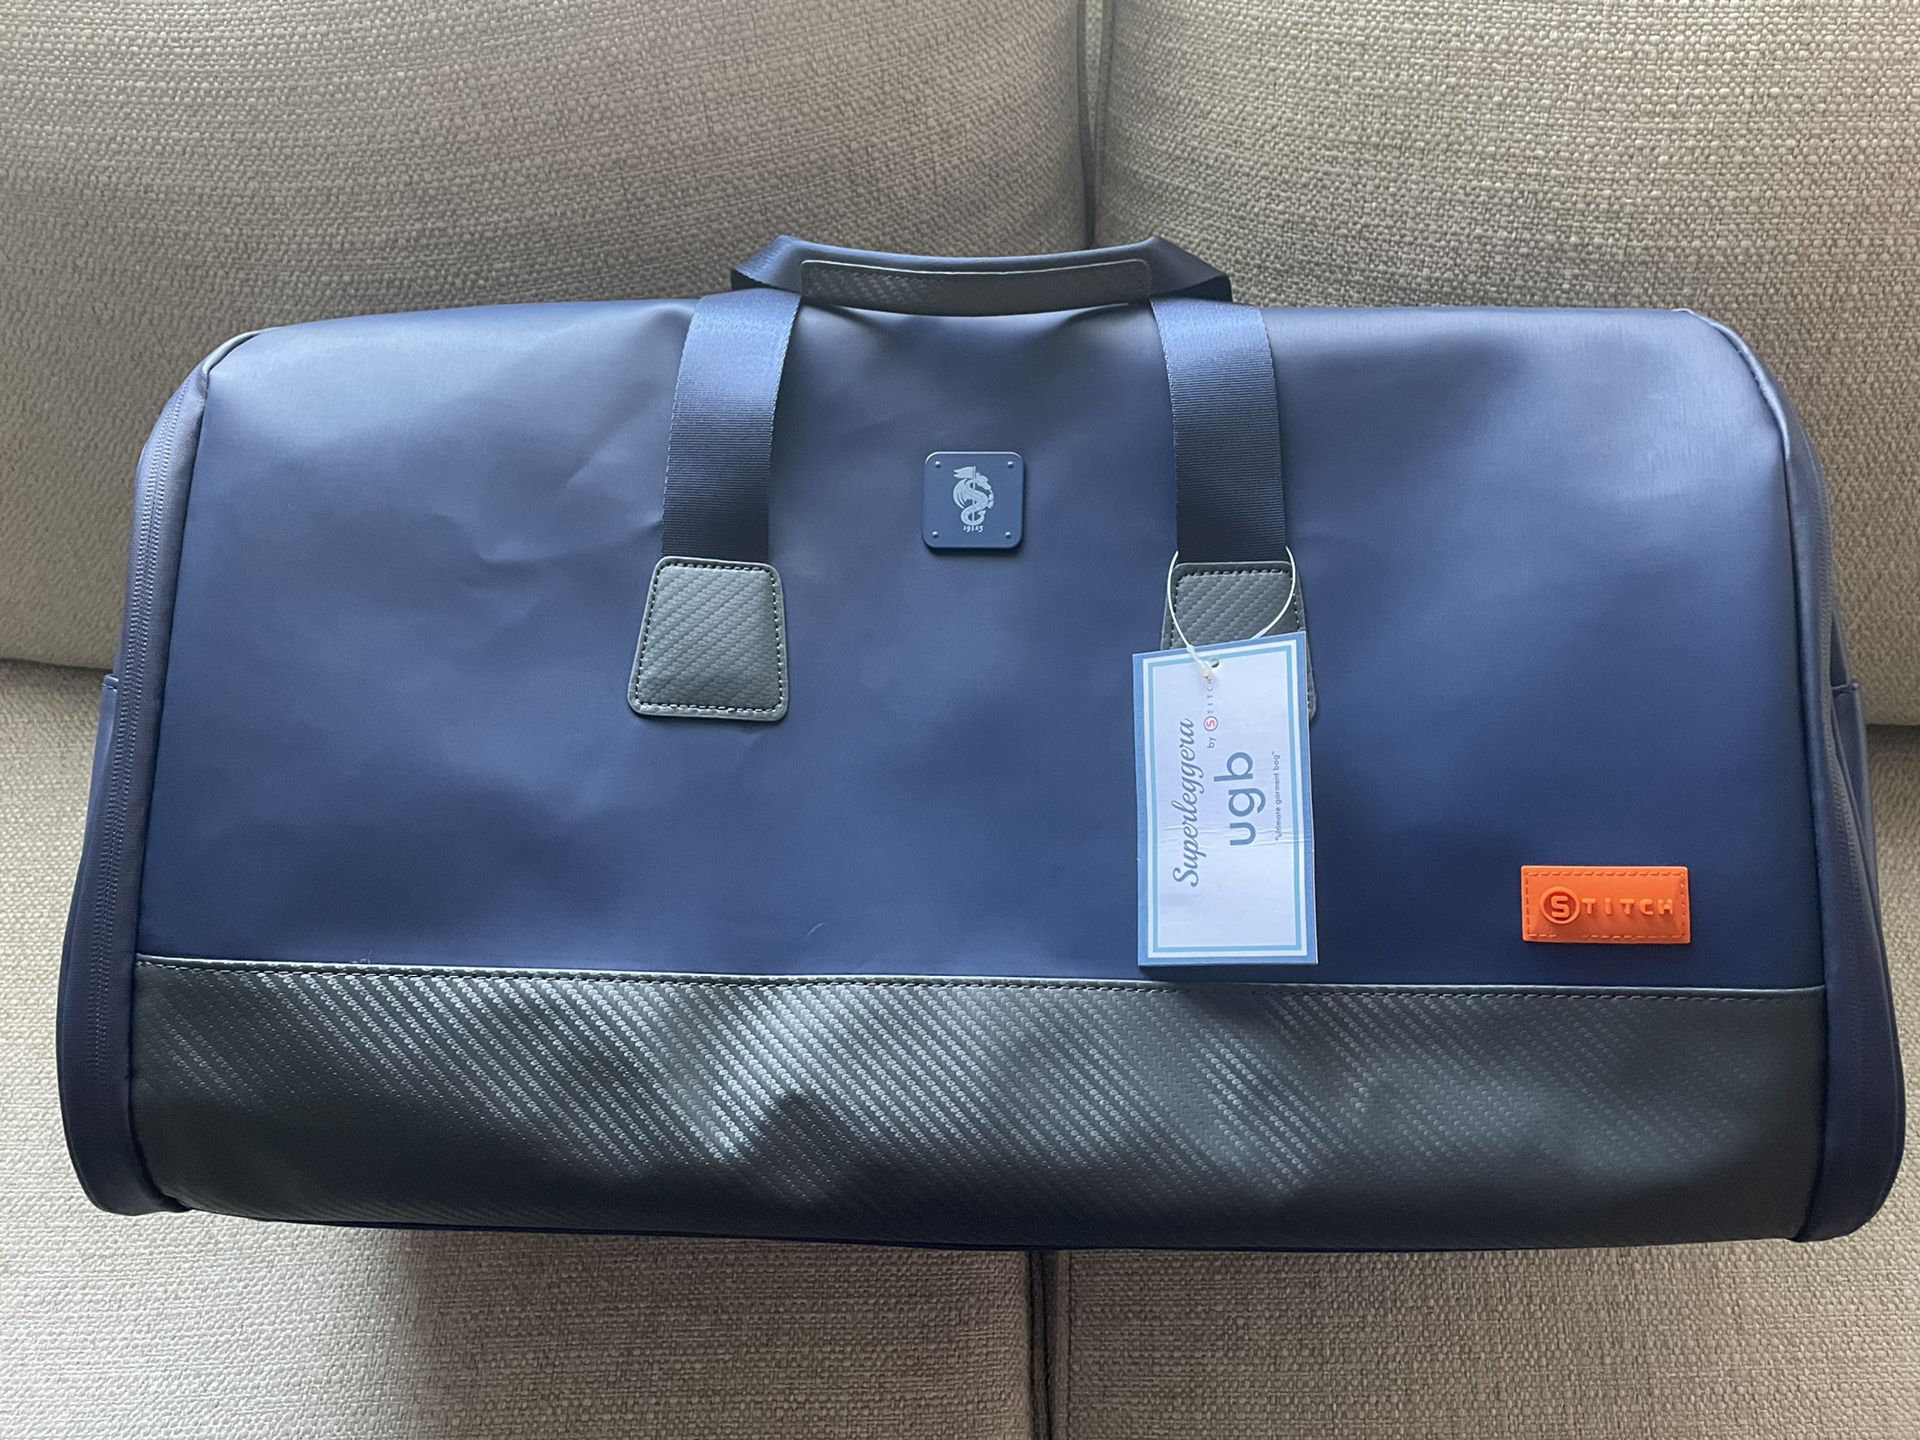 Superleggera By Stitch Ultimate Garment Bag, Luggage, Duffel, Sport Bag, Gym Bag, Golf Bag.